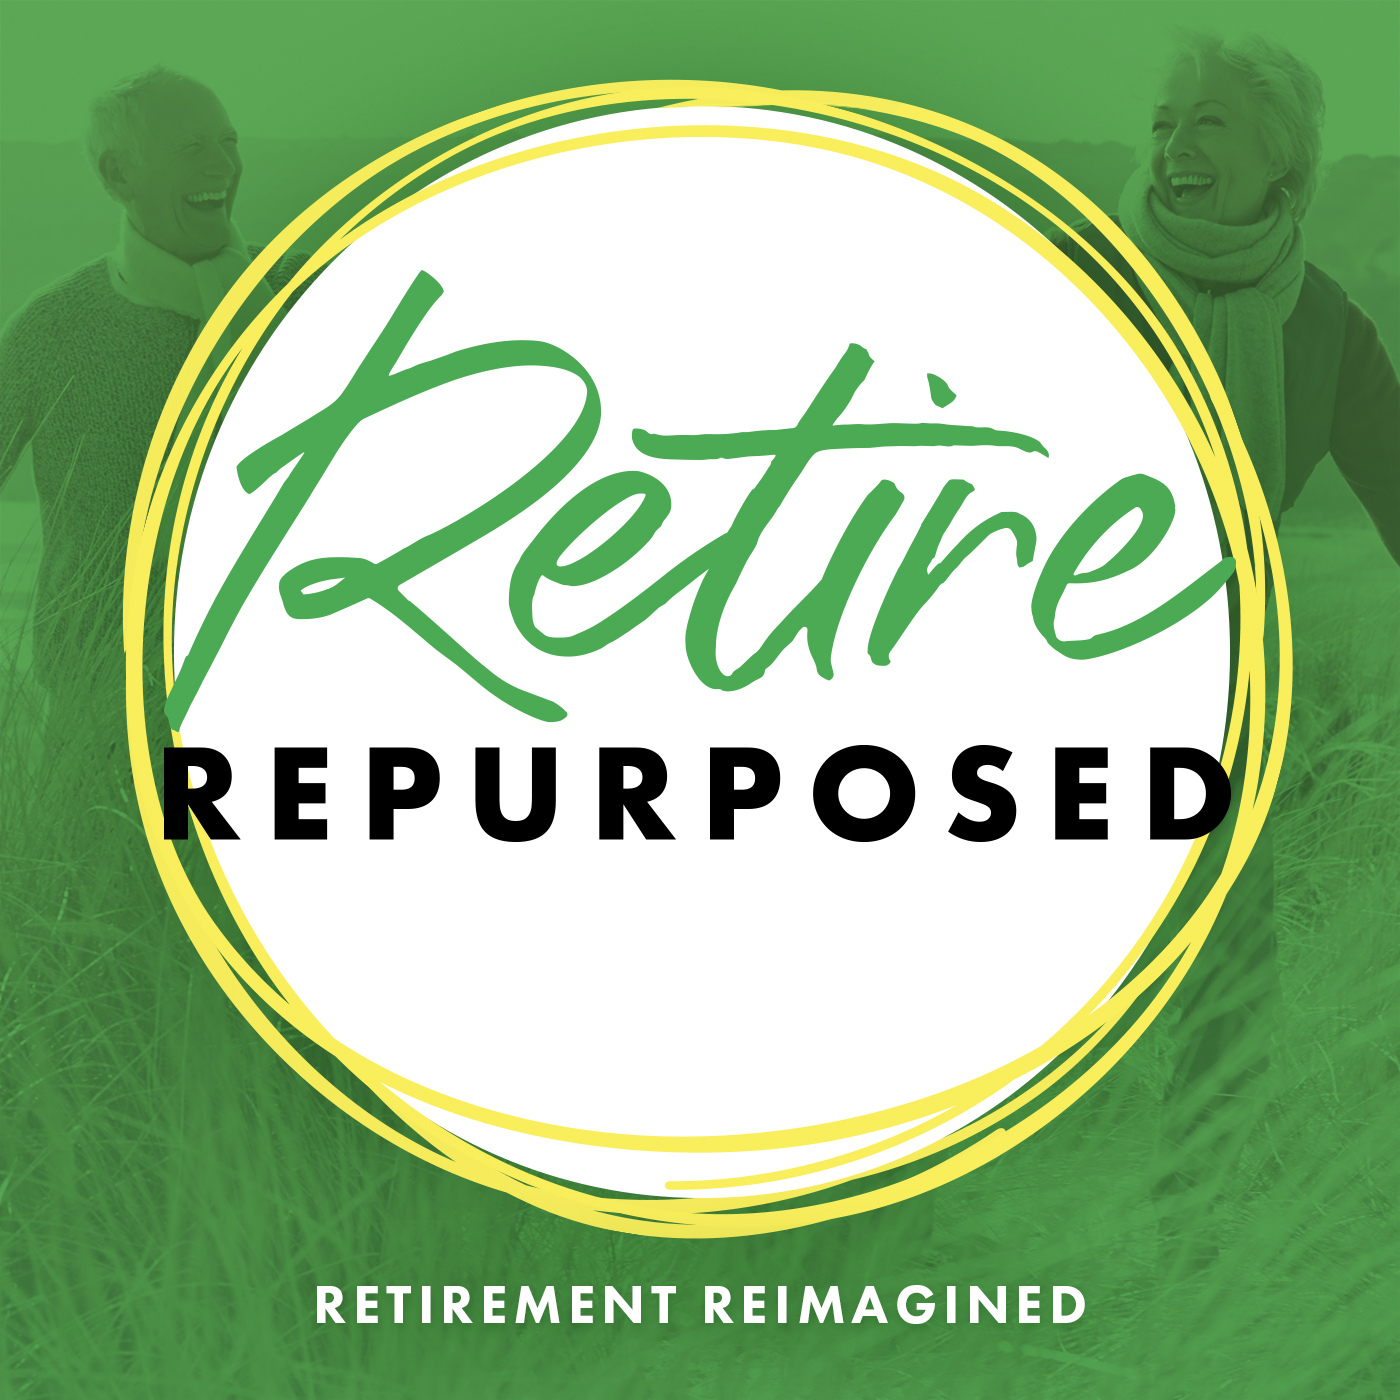 Retirement Communities: The Challenge